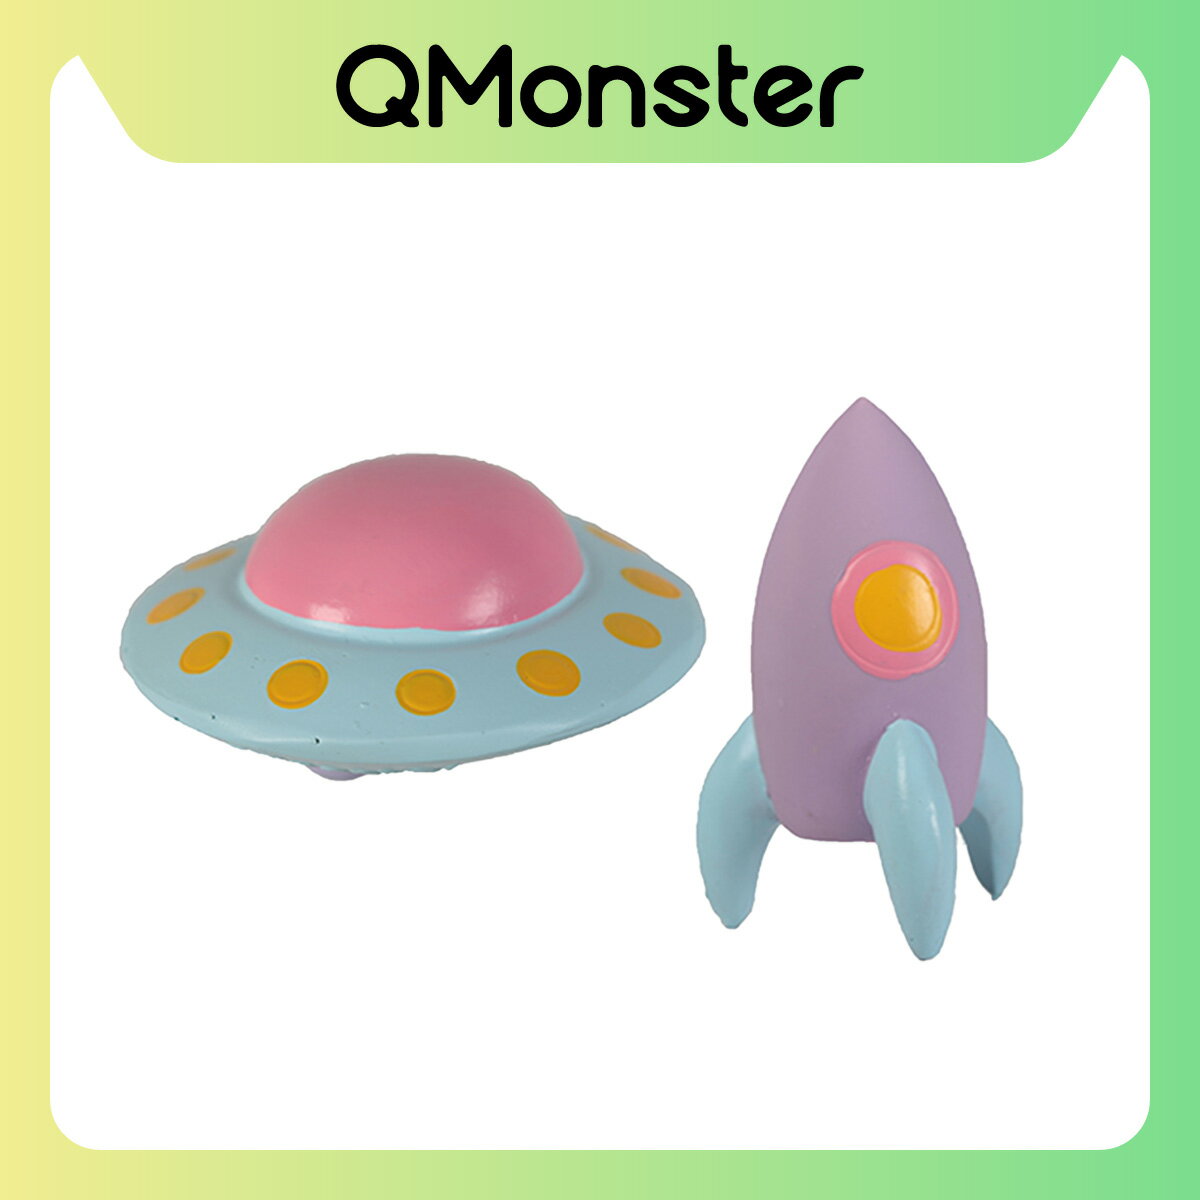 【Q-MONSTER】迷你款 火箭飛碟 發聲玩具 狗玩具 發聲玩具 寵物玩具 毛絨玩具 狗狗玩具 Q MONSTER